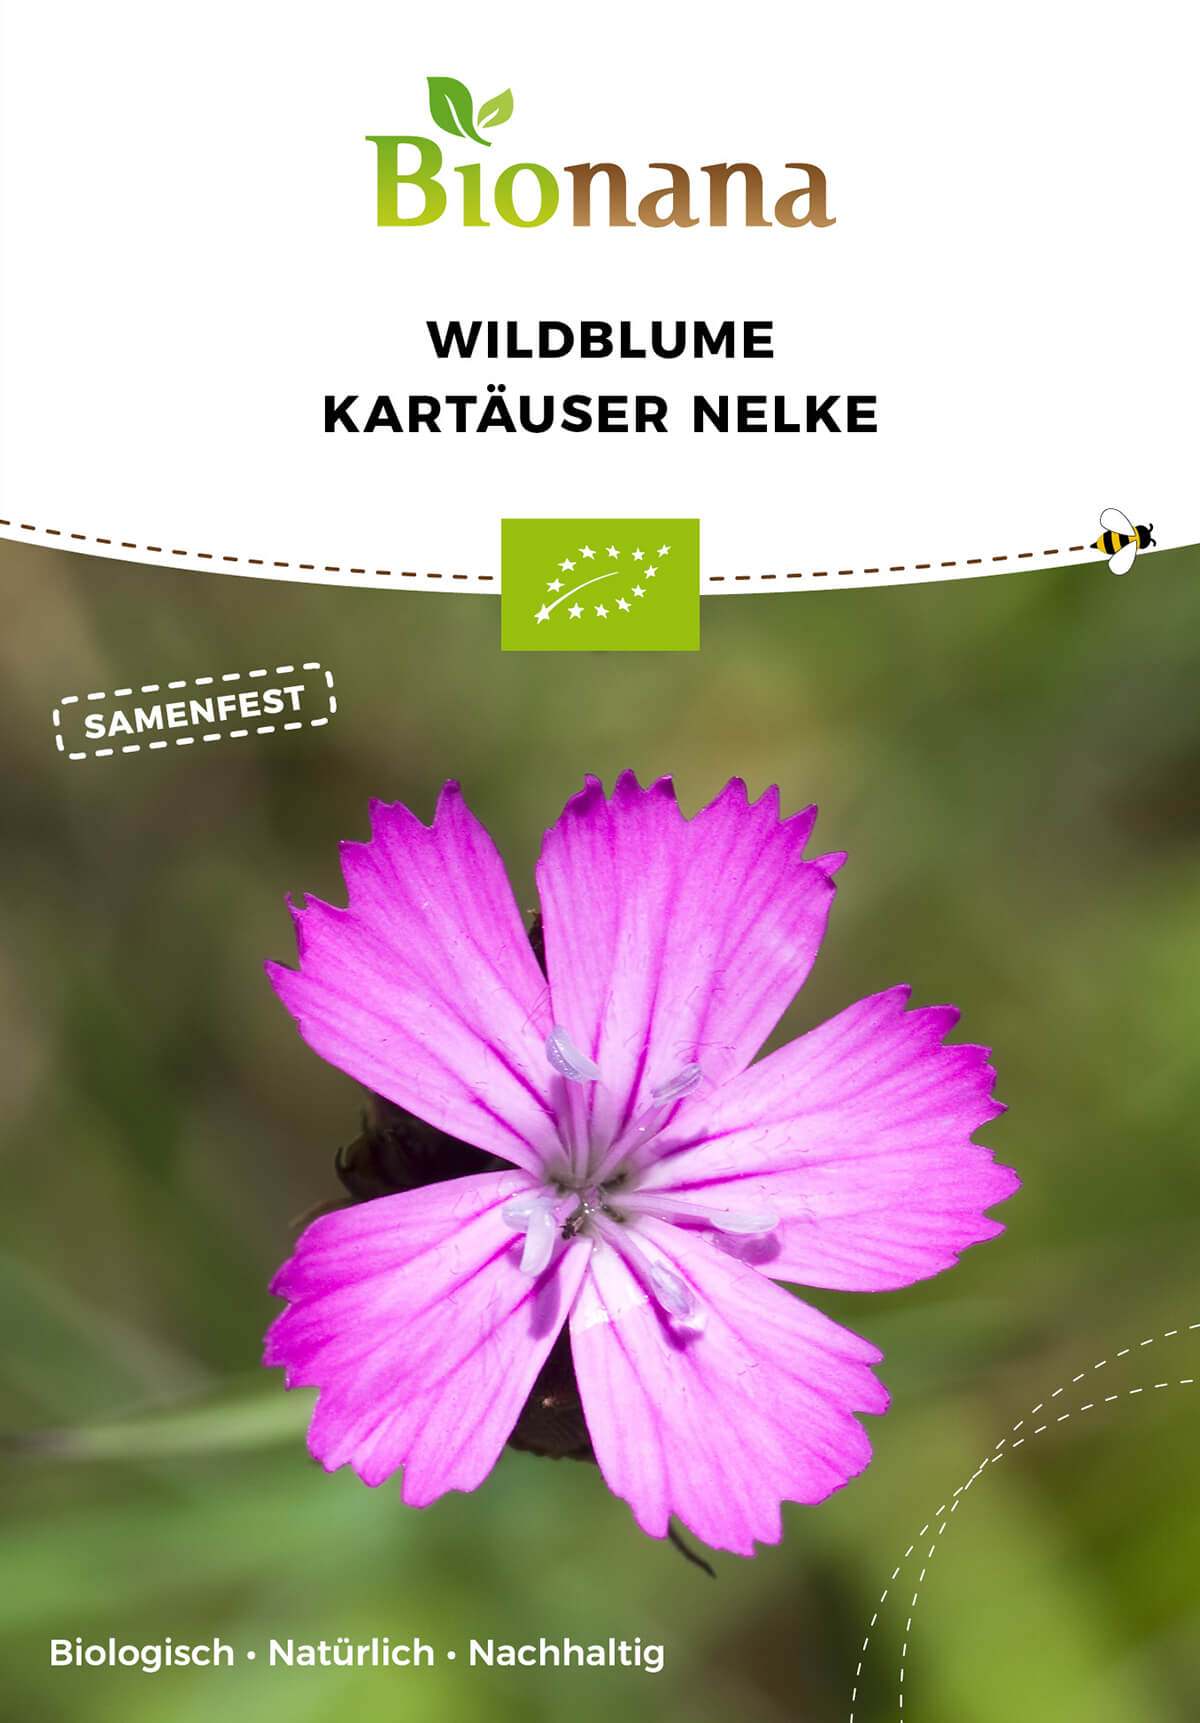 Wildblume Kartäuser Nelke | BIO Wildblumensamen von Bionana